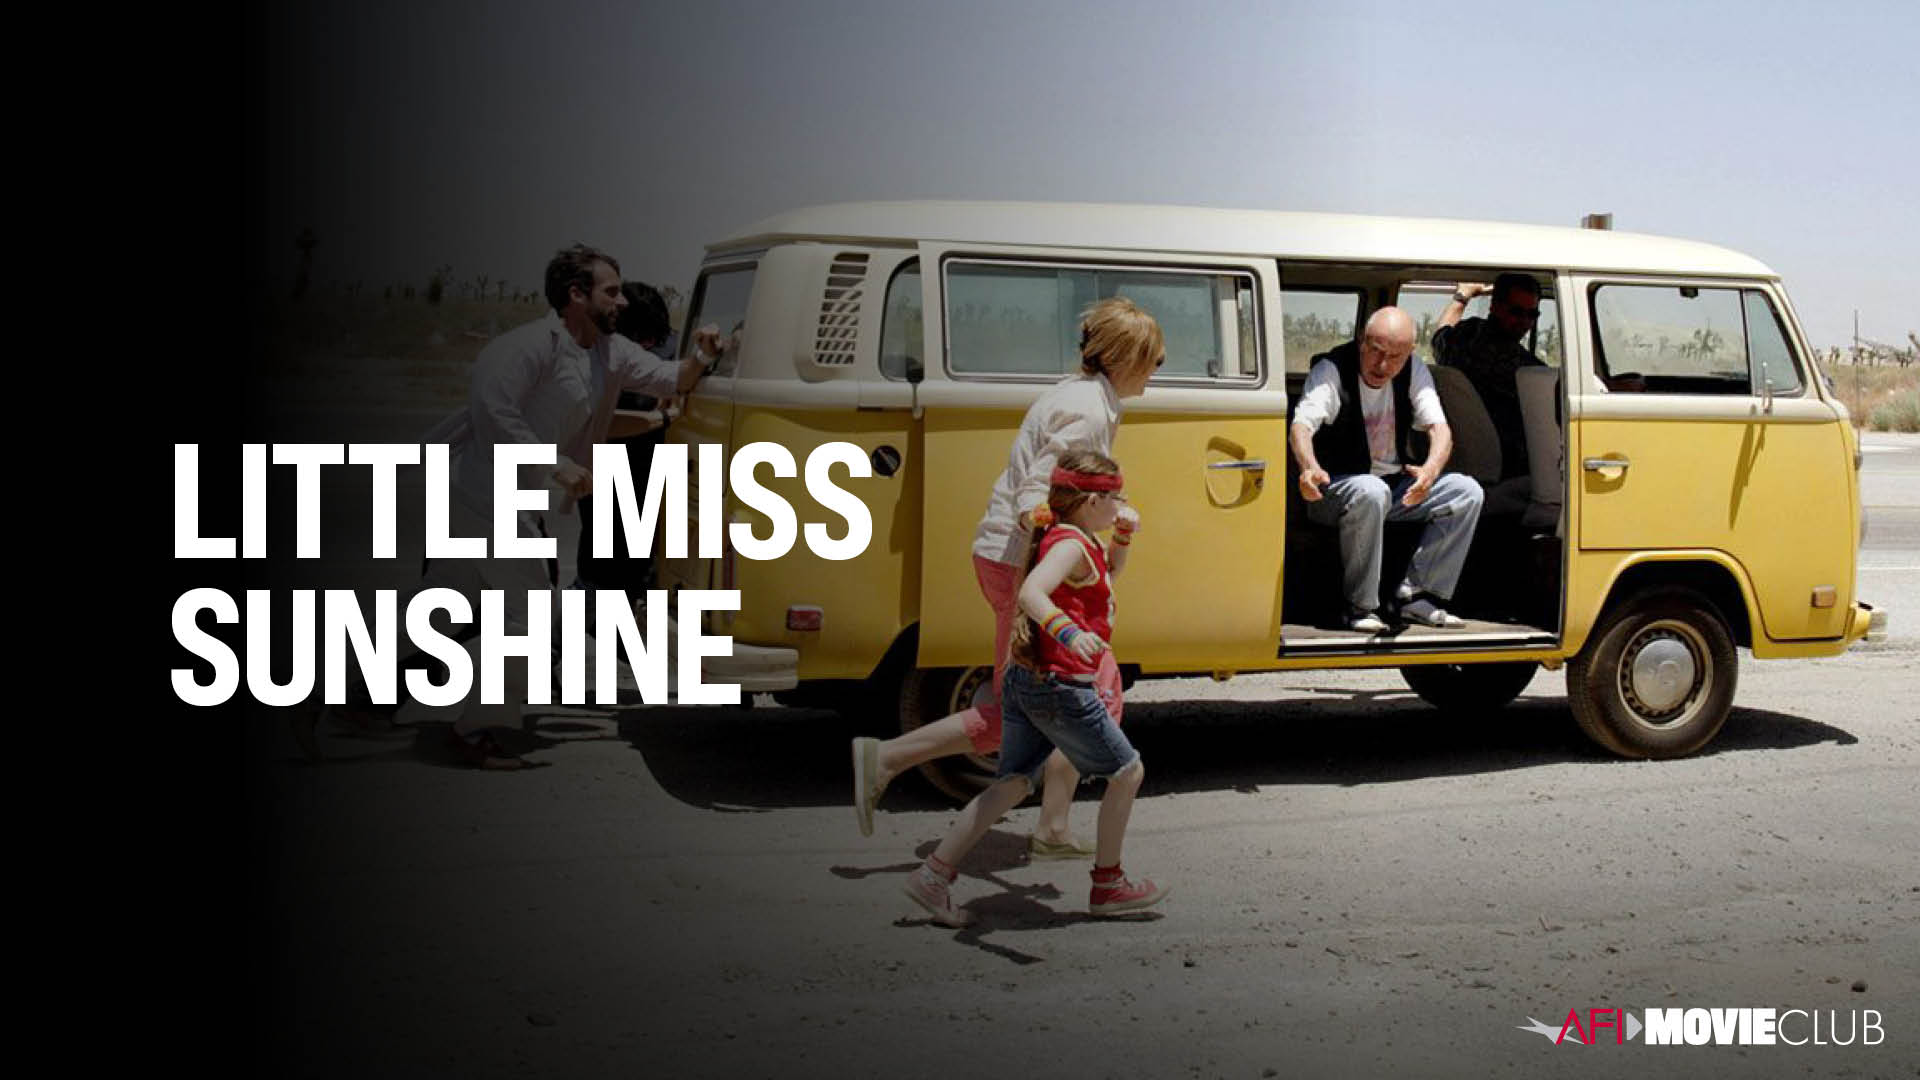 Little Miss Sunshine Film Still - Toni Collette, Greg Kinnear, Steve Carell, and Abigail Breslin